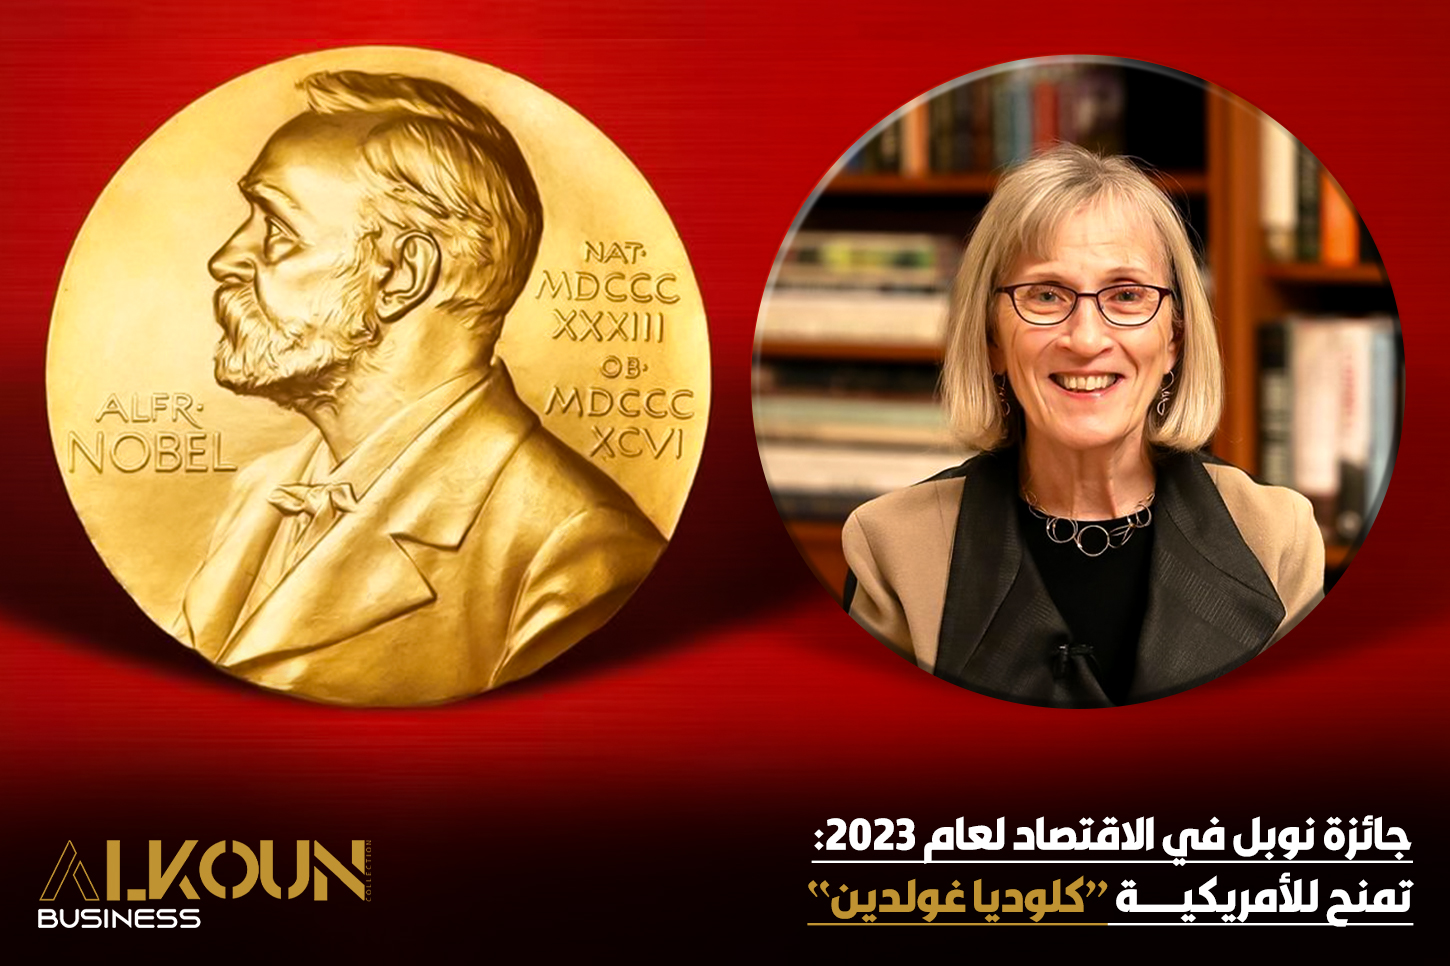 جائزة نوبل في الاقتصاد لعام 2023: تمنح للأمريكية "كلوديا غولدين"